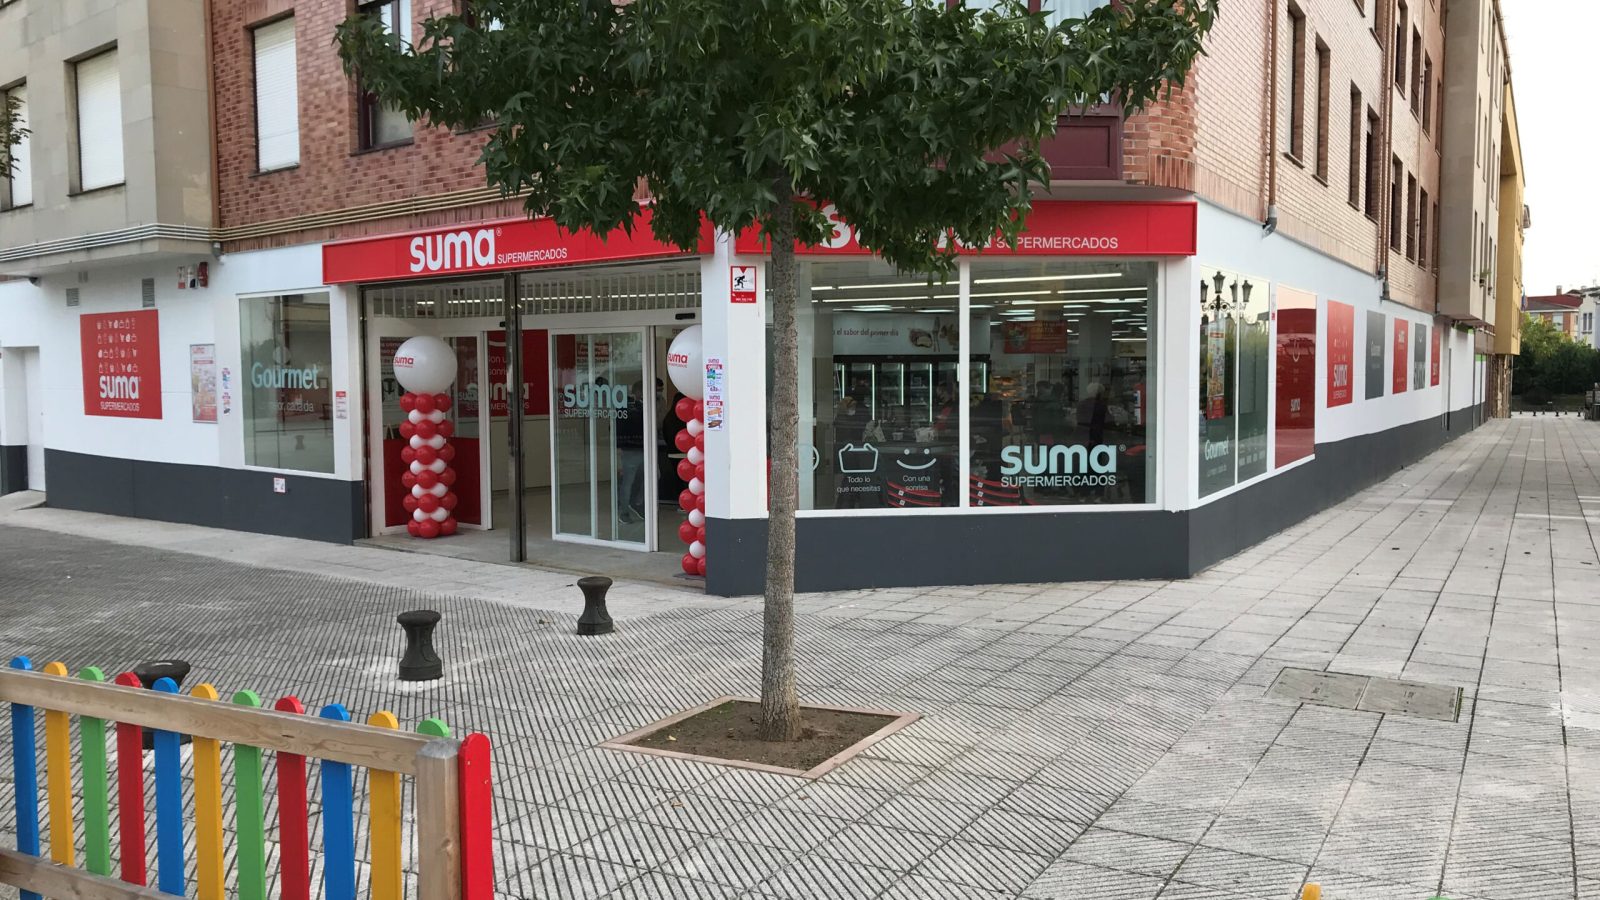 SUMA_Asturias-1